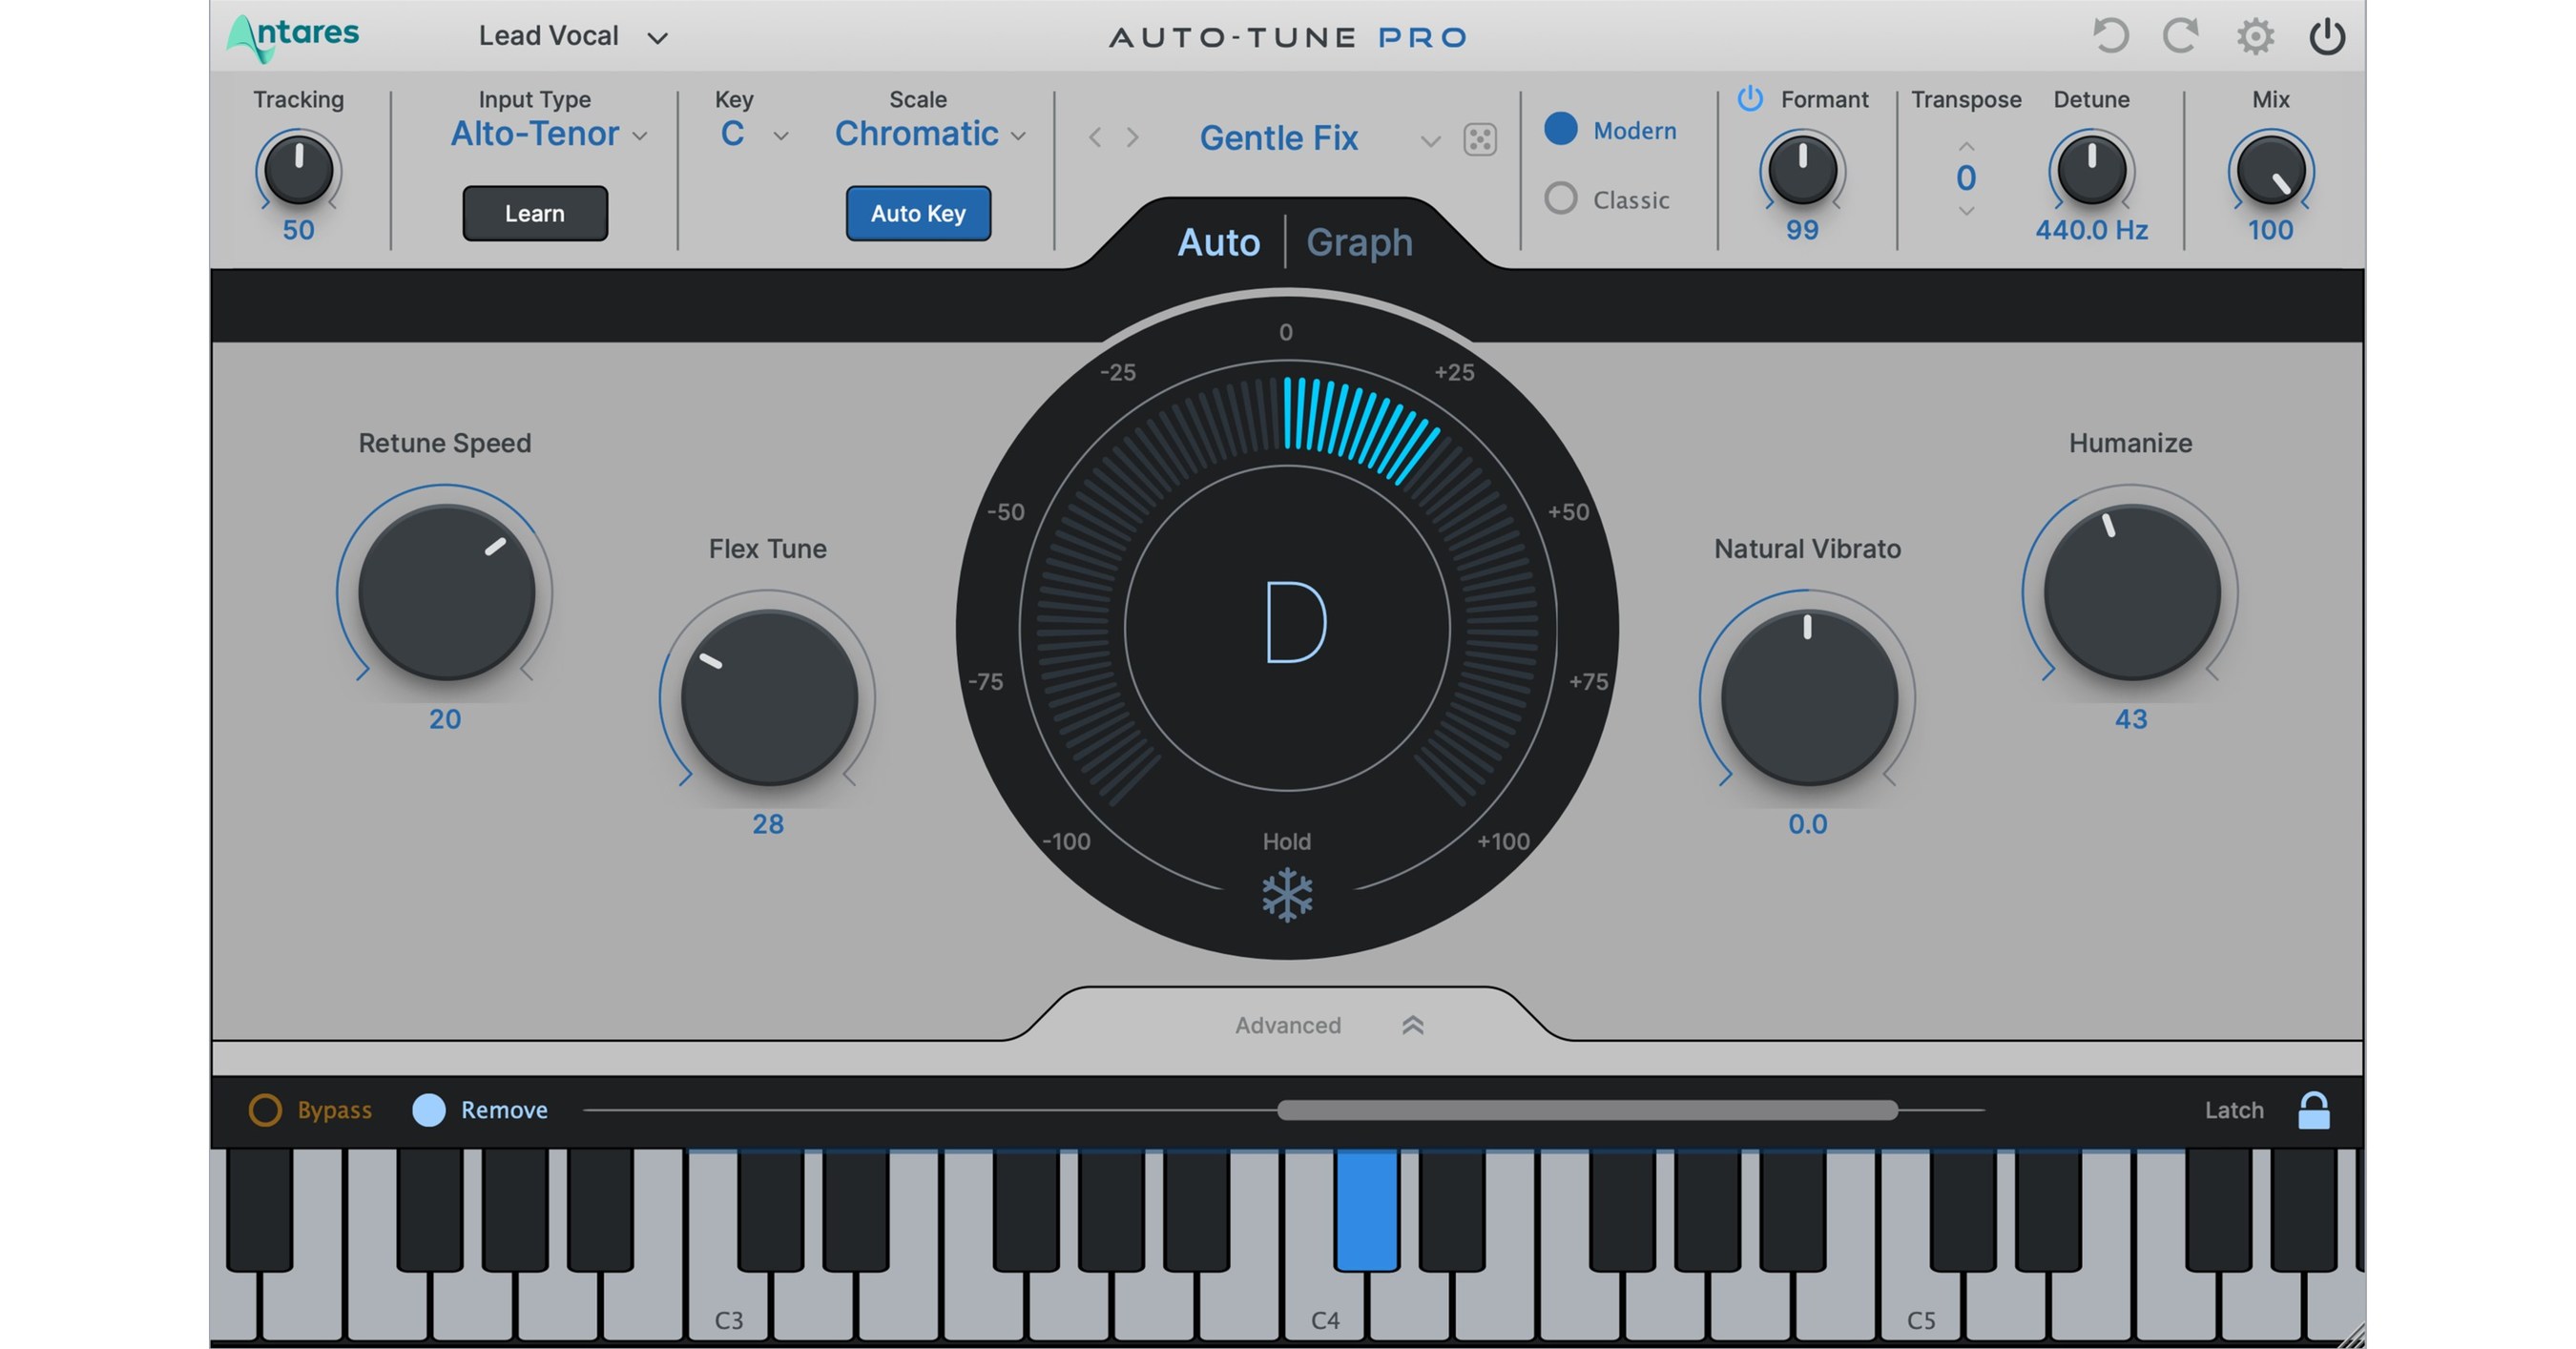 Auto-Tune® developer Antares Audio Technologies launches Auto-Tune Pro X